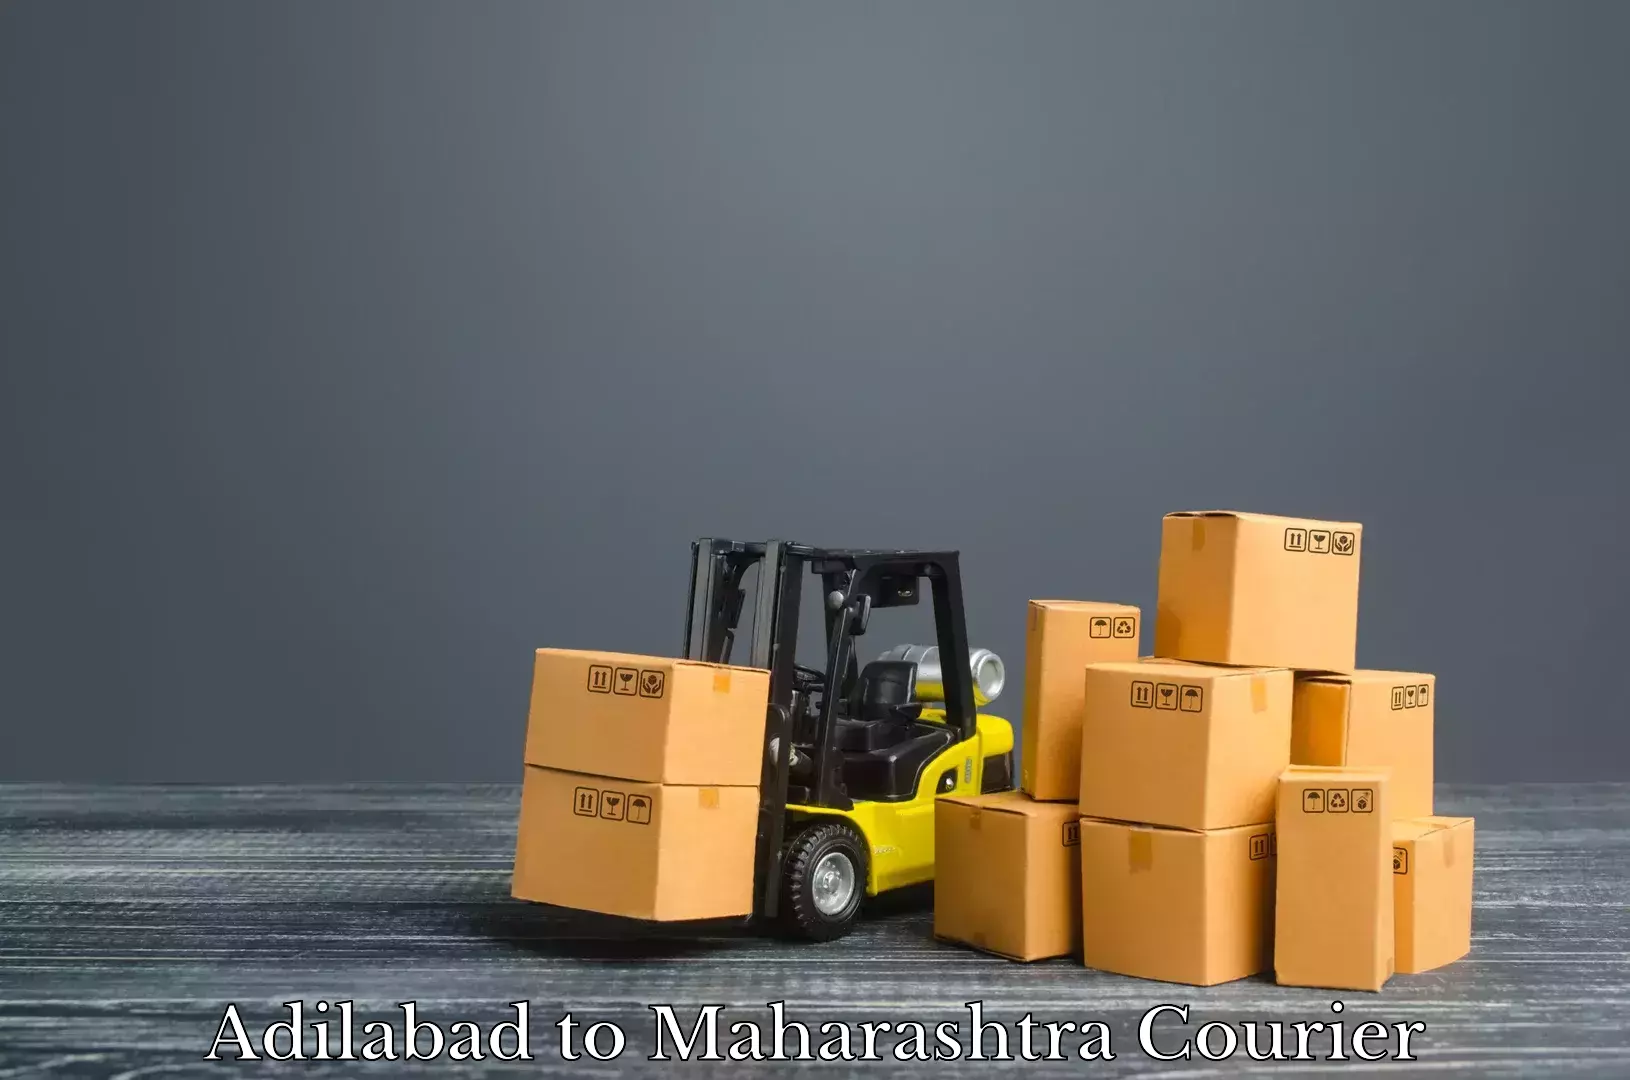 Luggage transport company Adilabad to Nira